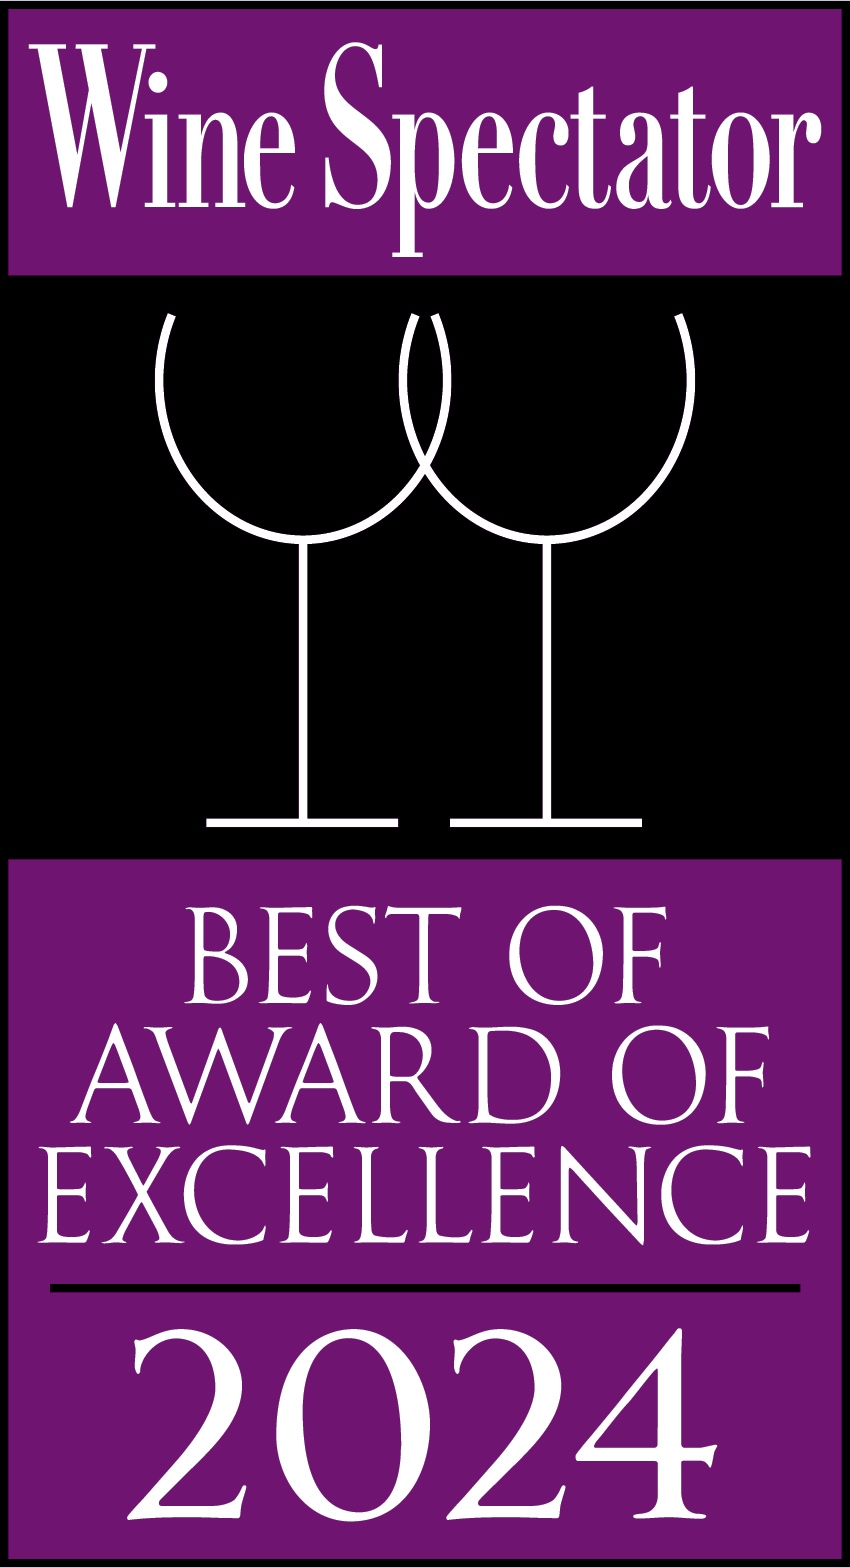 2024年 - Wine Spectator - Award of Excellence